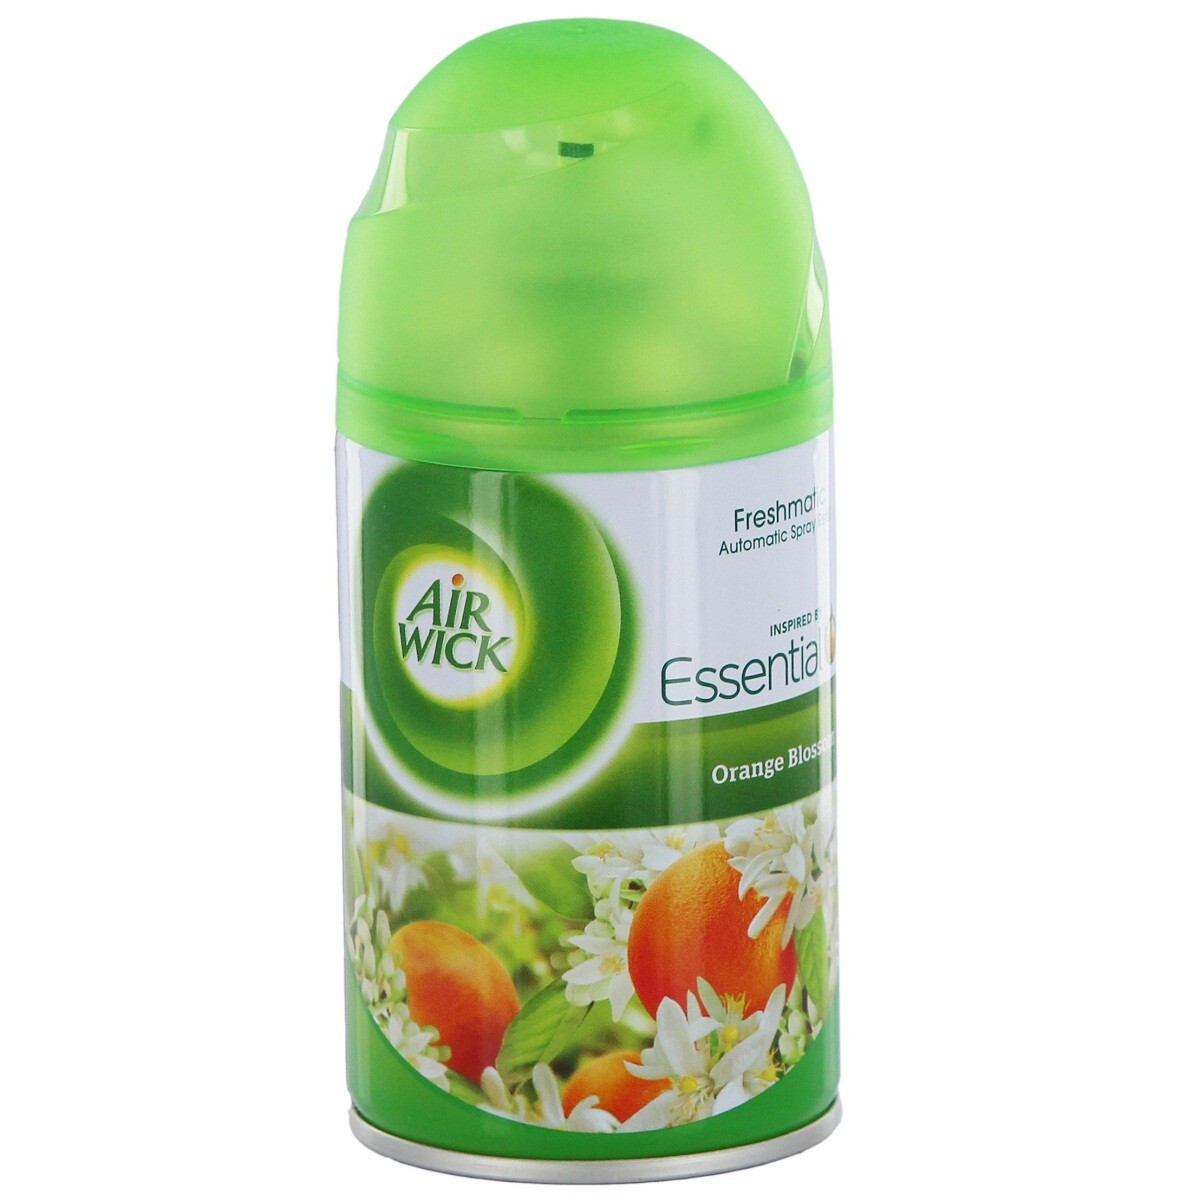 Air Wick Freshmatic Refill Orange Blossom 250ml